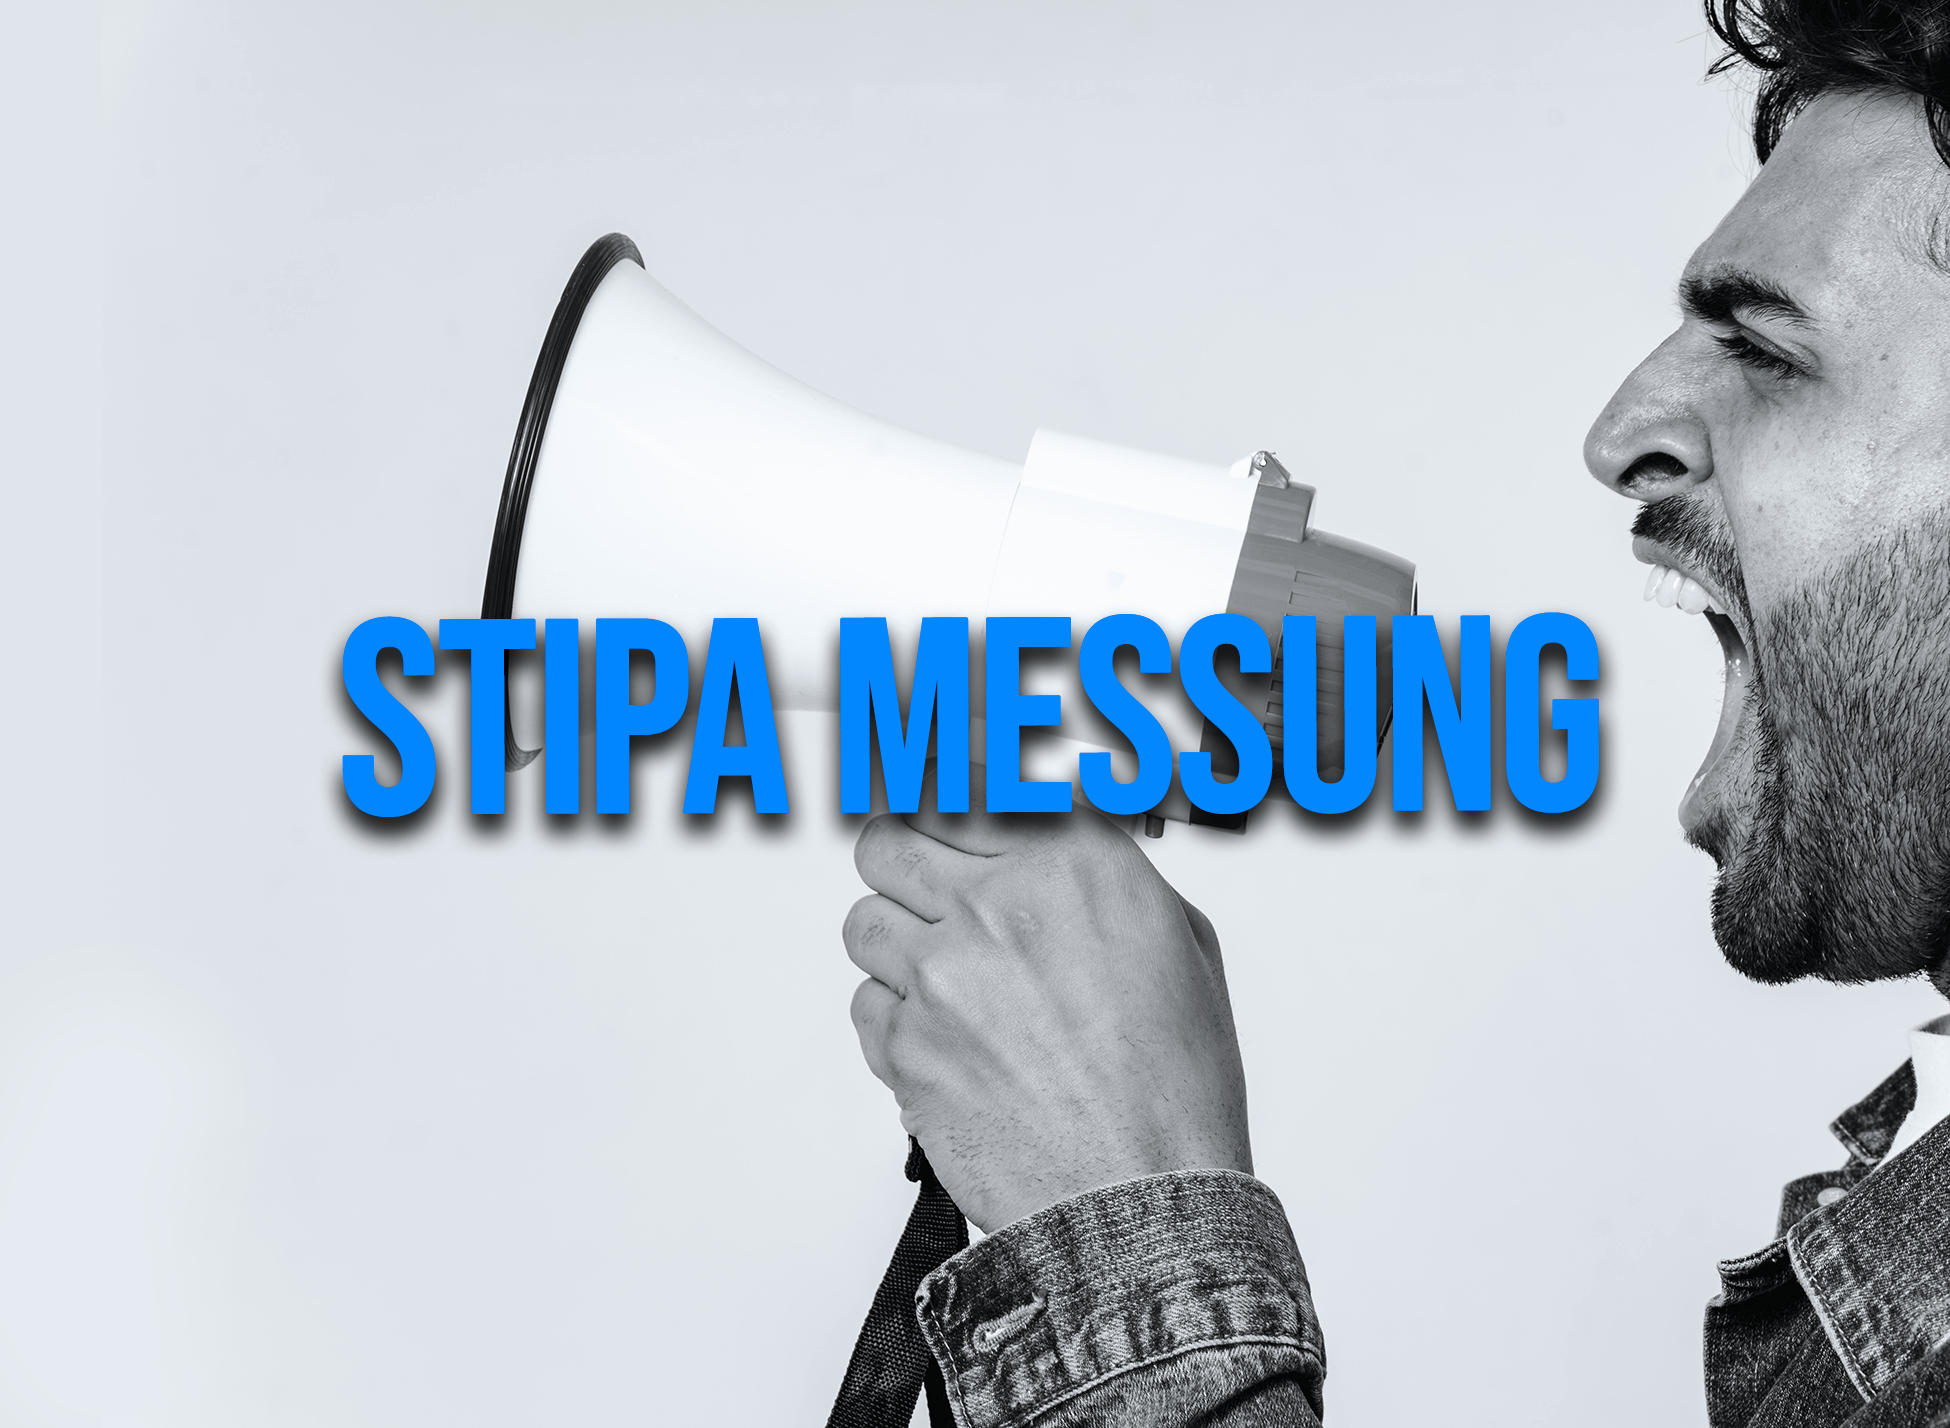 StiPa Messung. Sprachverständlichkeit kann man messen. Dieses Thema war nicht prüfungsbestandteil.